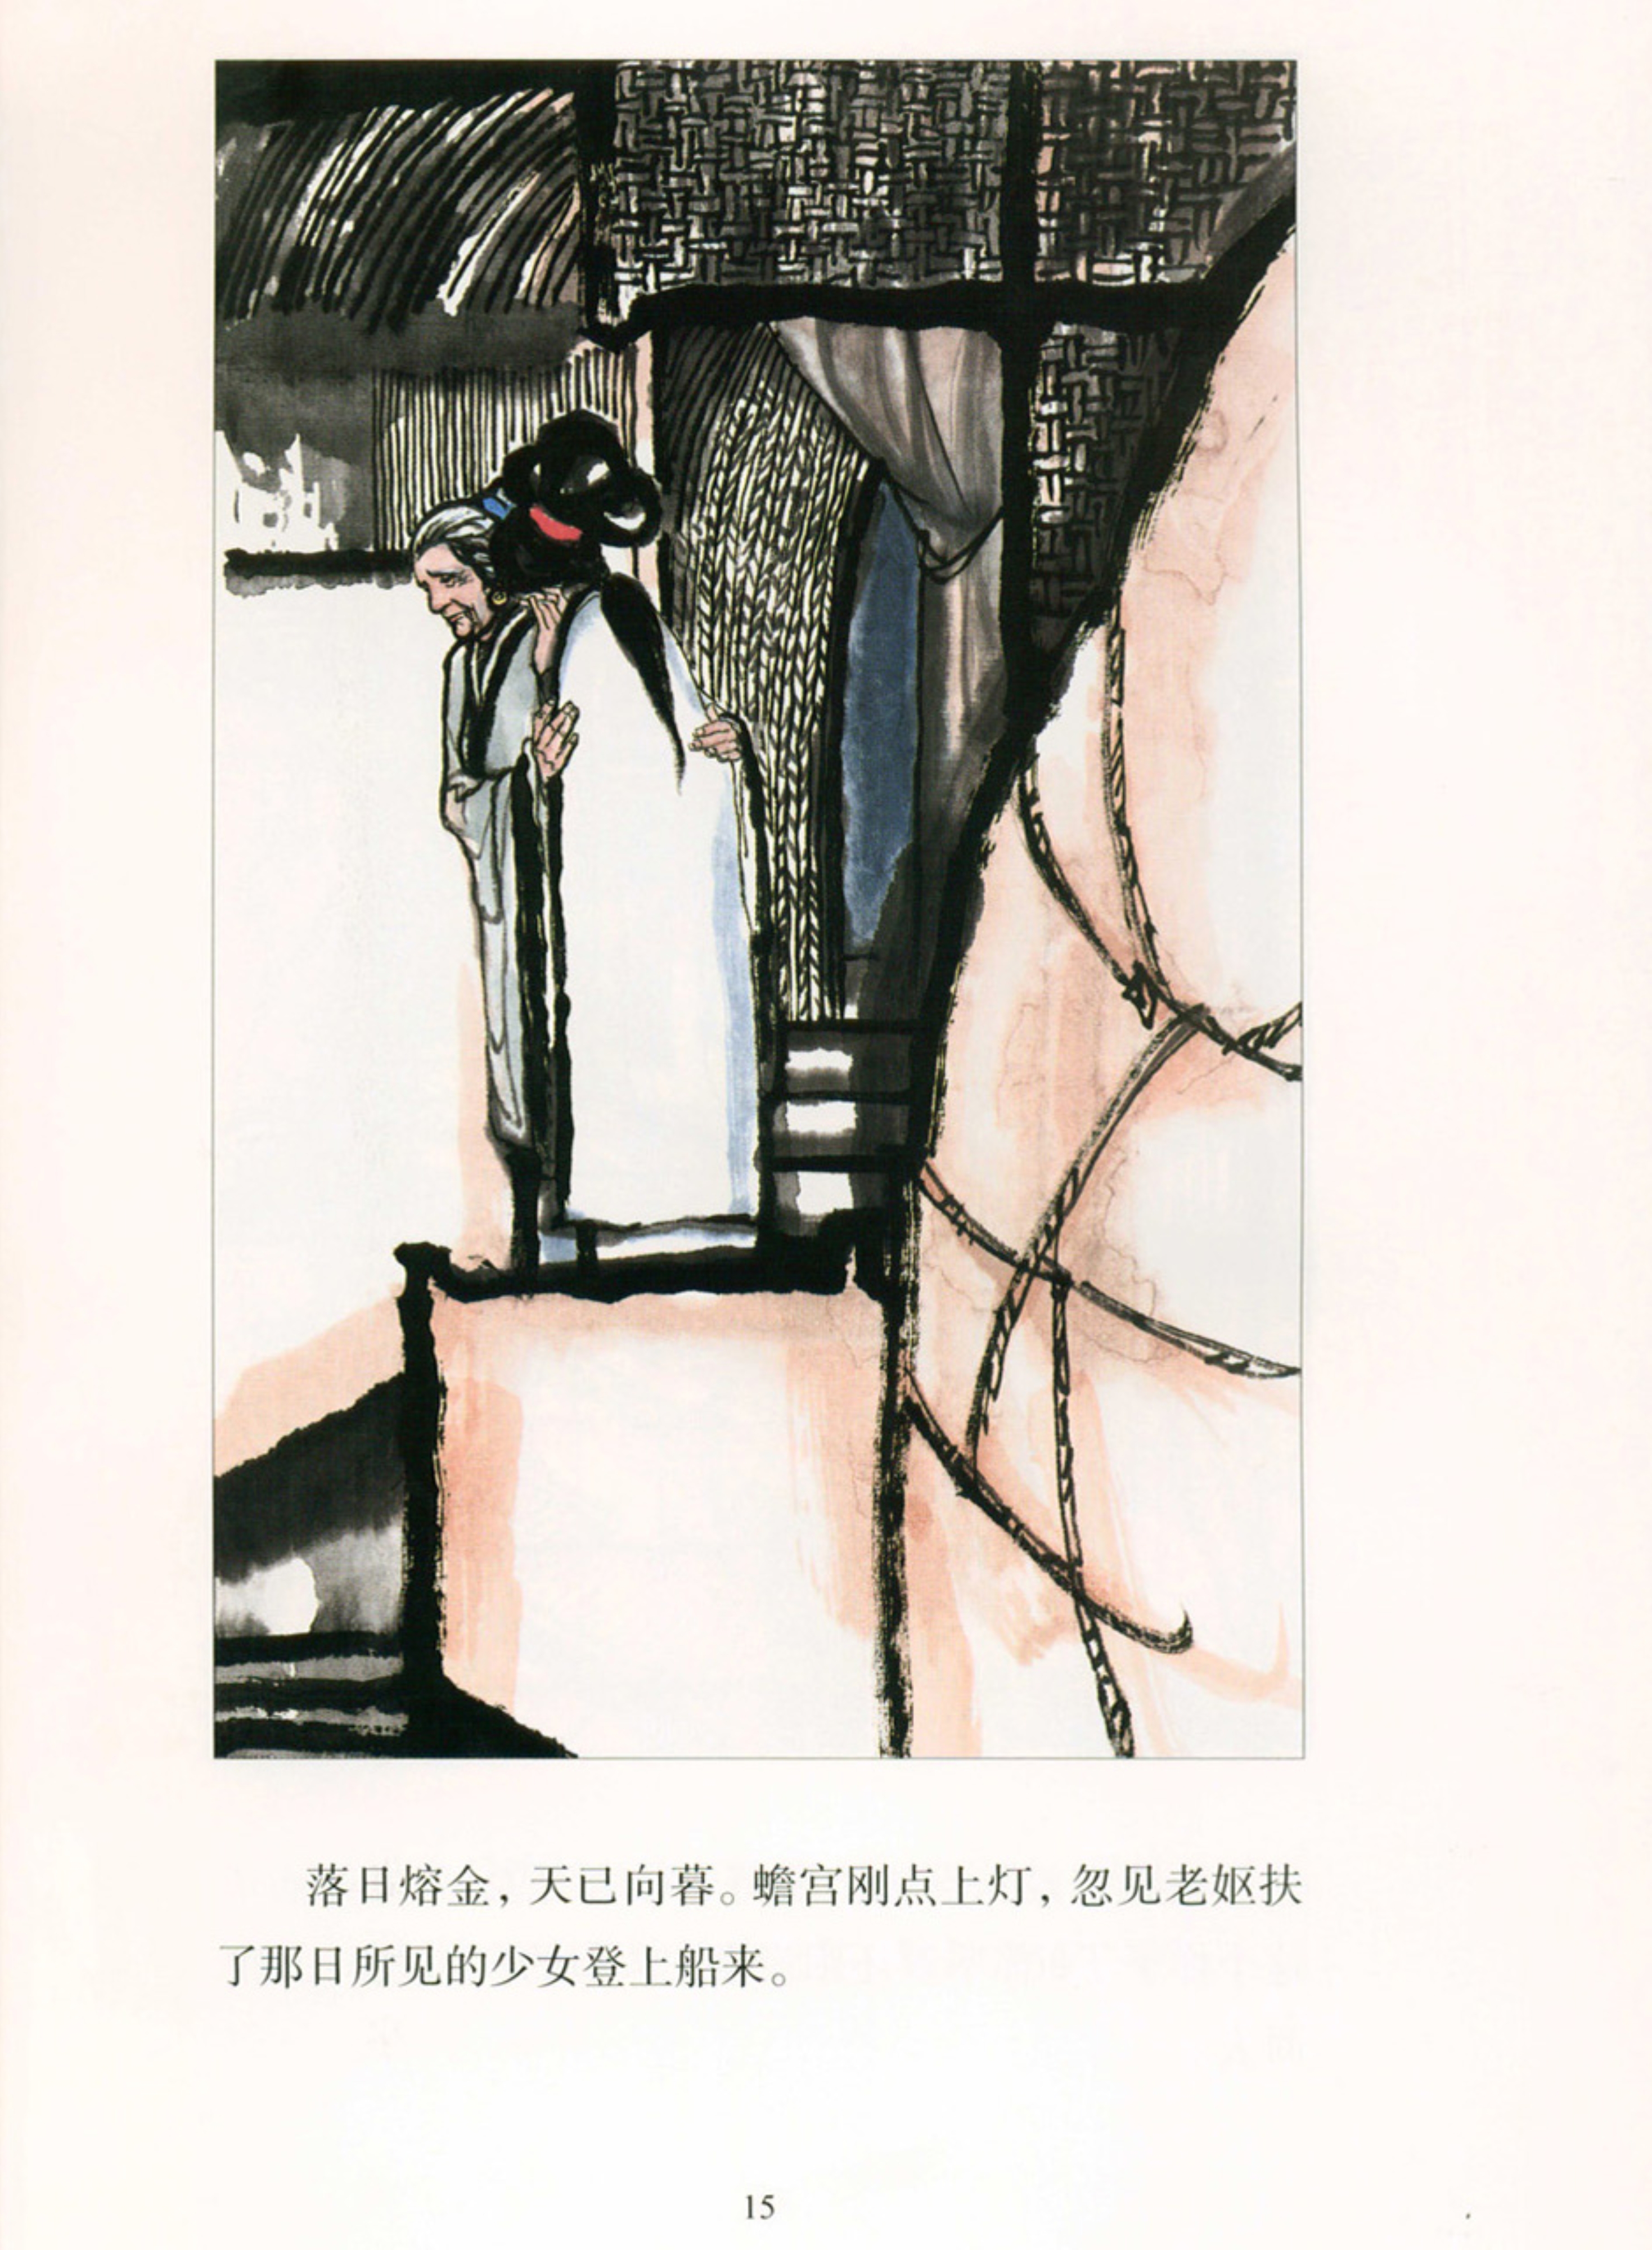 彩绘连环画欣赏——《聊斋志异》20《白秋练》，江苏美术出版社